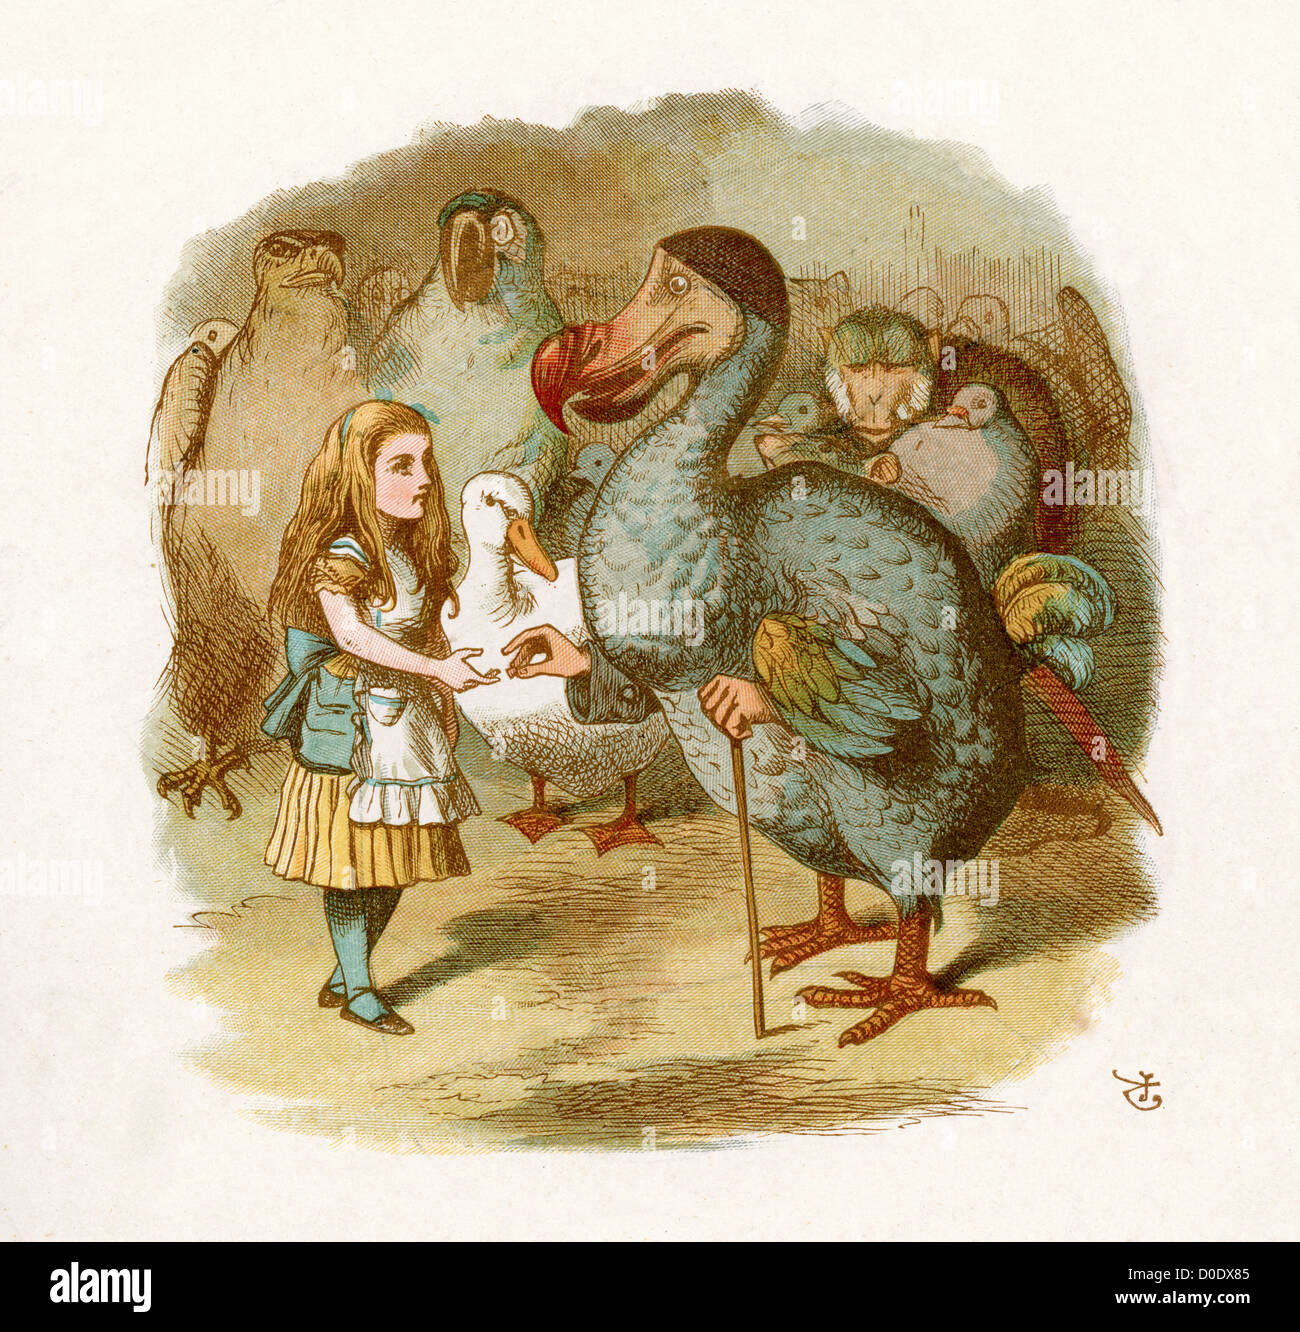 Alice und der Dodo von Lewis Carroll Geschichte Alice im Wunderland, Illustration von Sir John Tenniel, 1871 Stockfoto